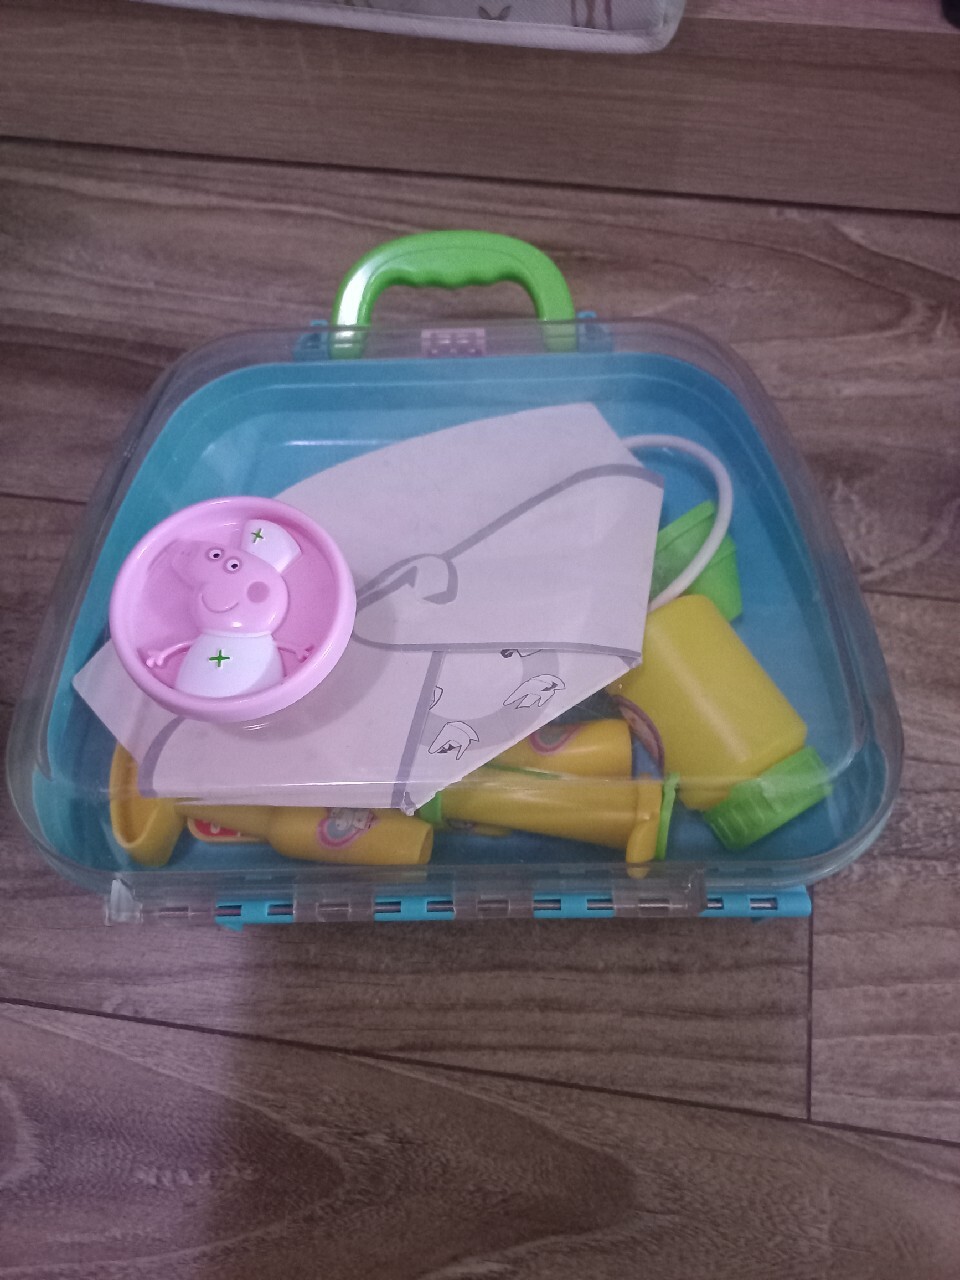 Zabawki plastikowe Smyk dla dzieci w wieku 2 lata + - dziewczynek i  chłopców - sklep internetowy - Allegro.pl